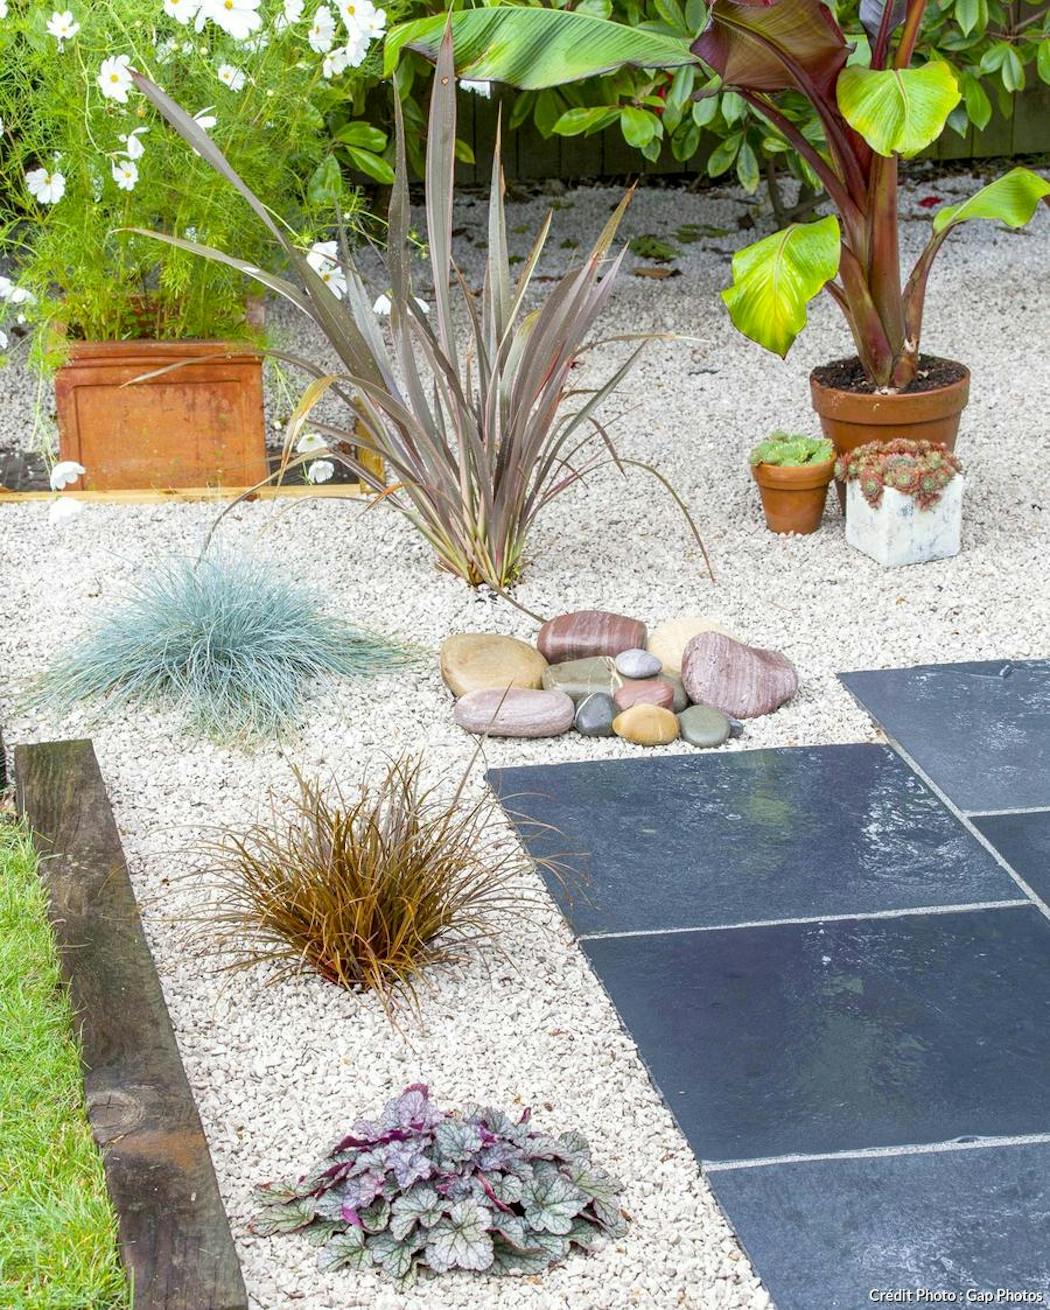 Jardin sur gravier : réussir l'aménagement d'un jardin décoratif de gravier